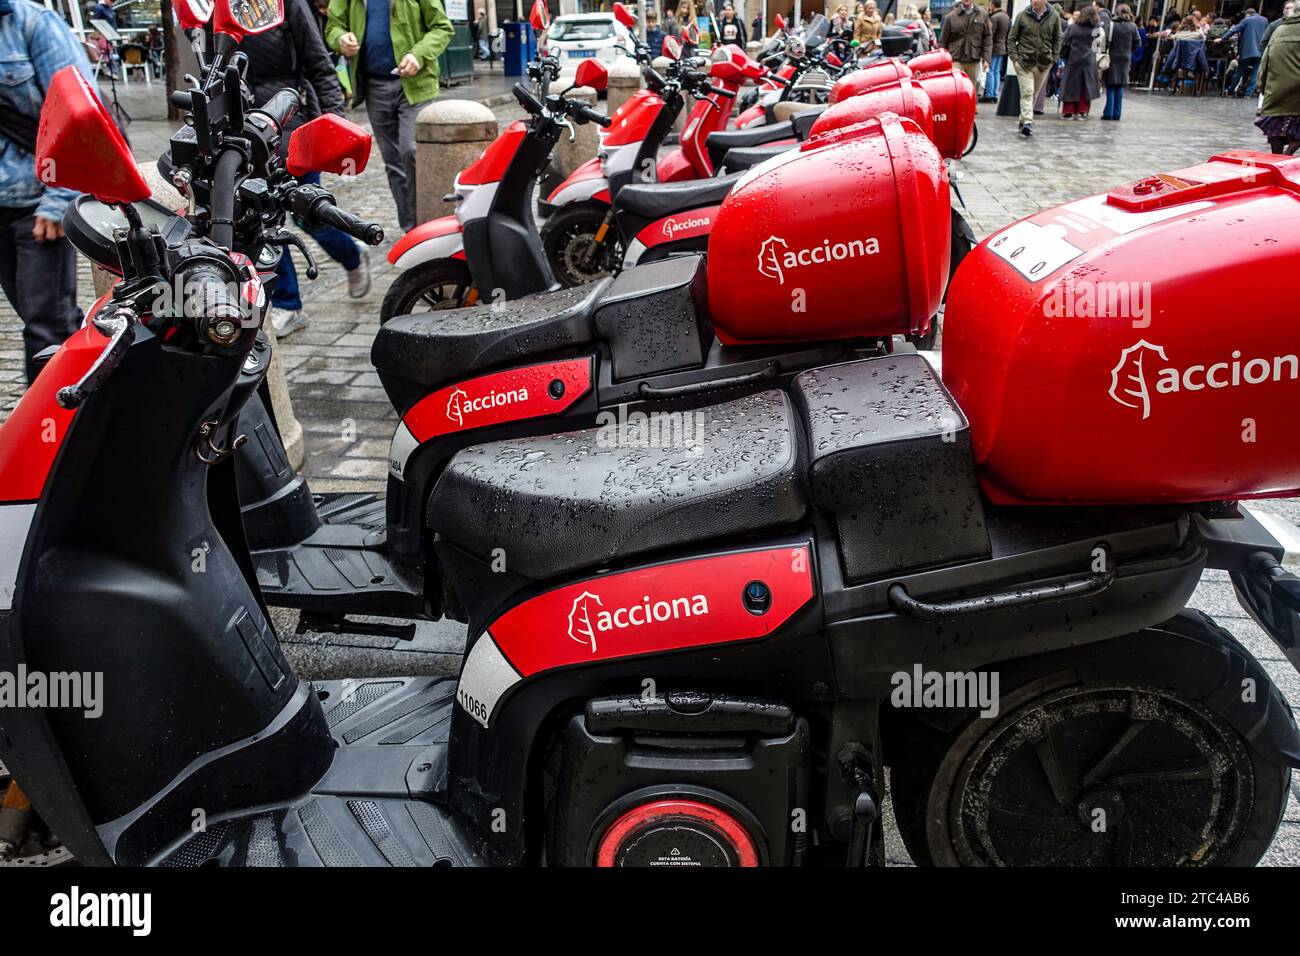 Acciona Scooters, una società di scooter sharing, a Siviglia, Spagna. Foto Stock